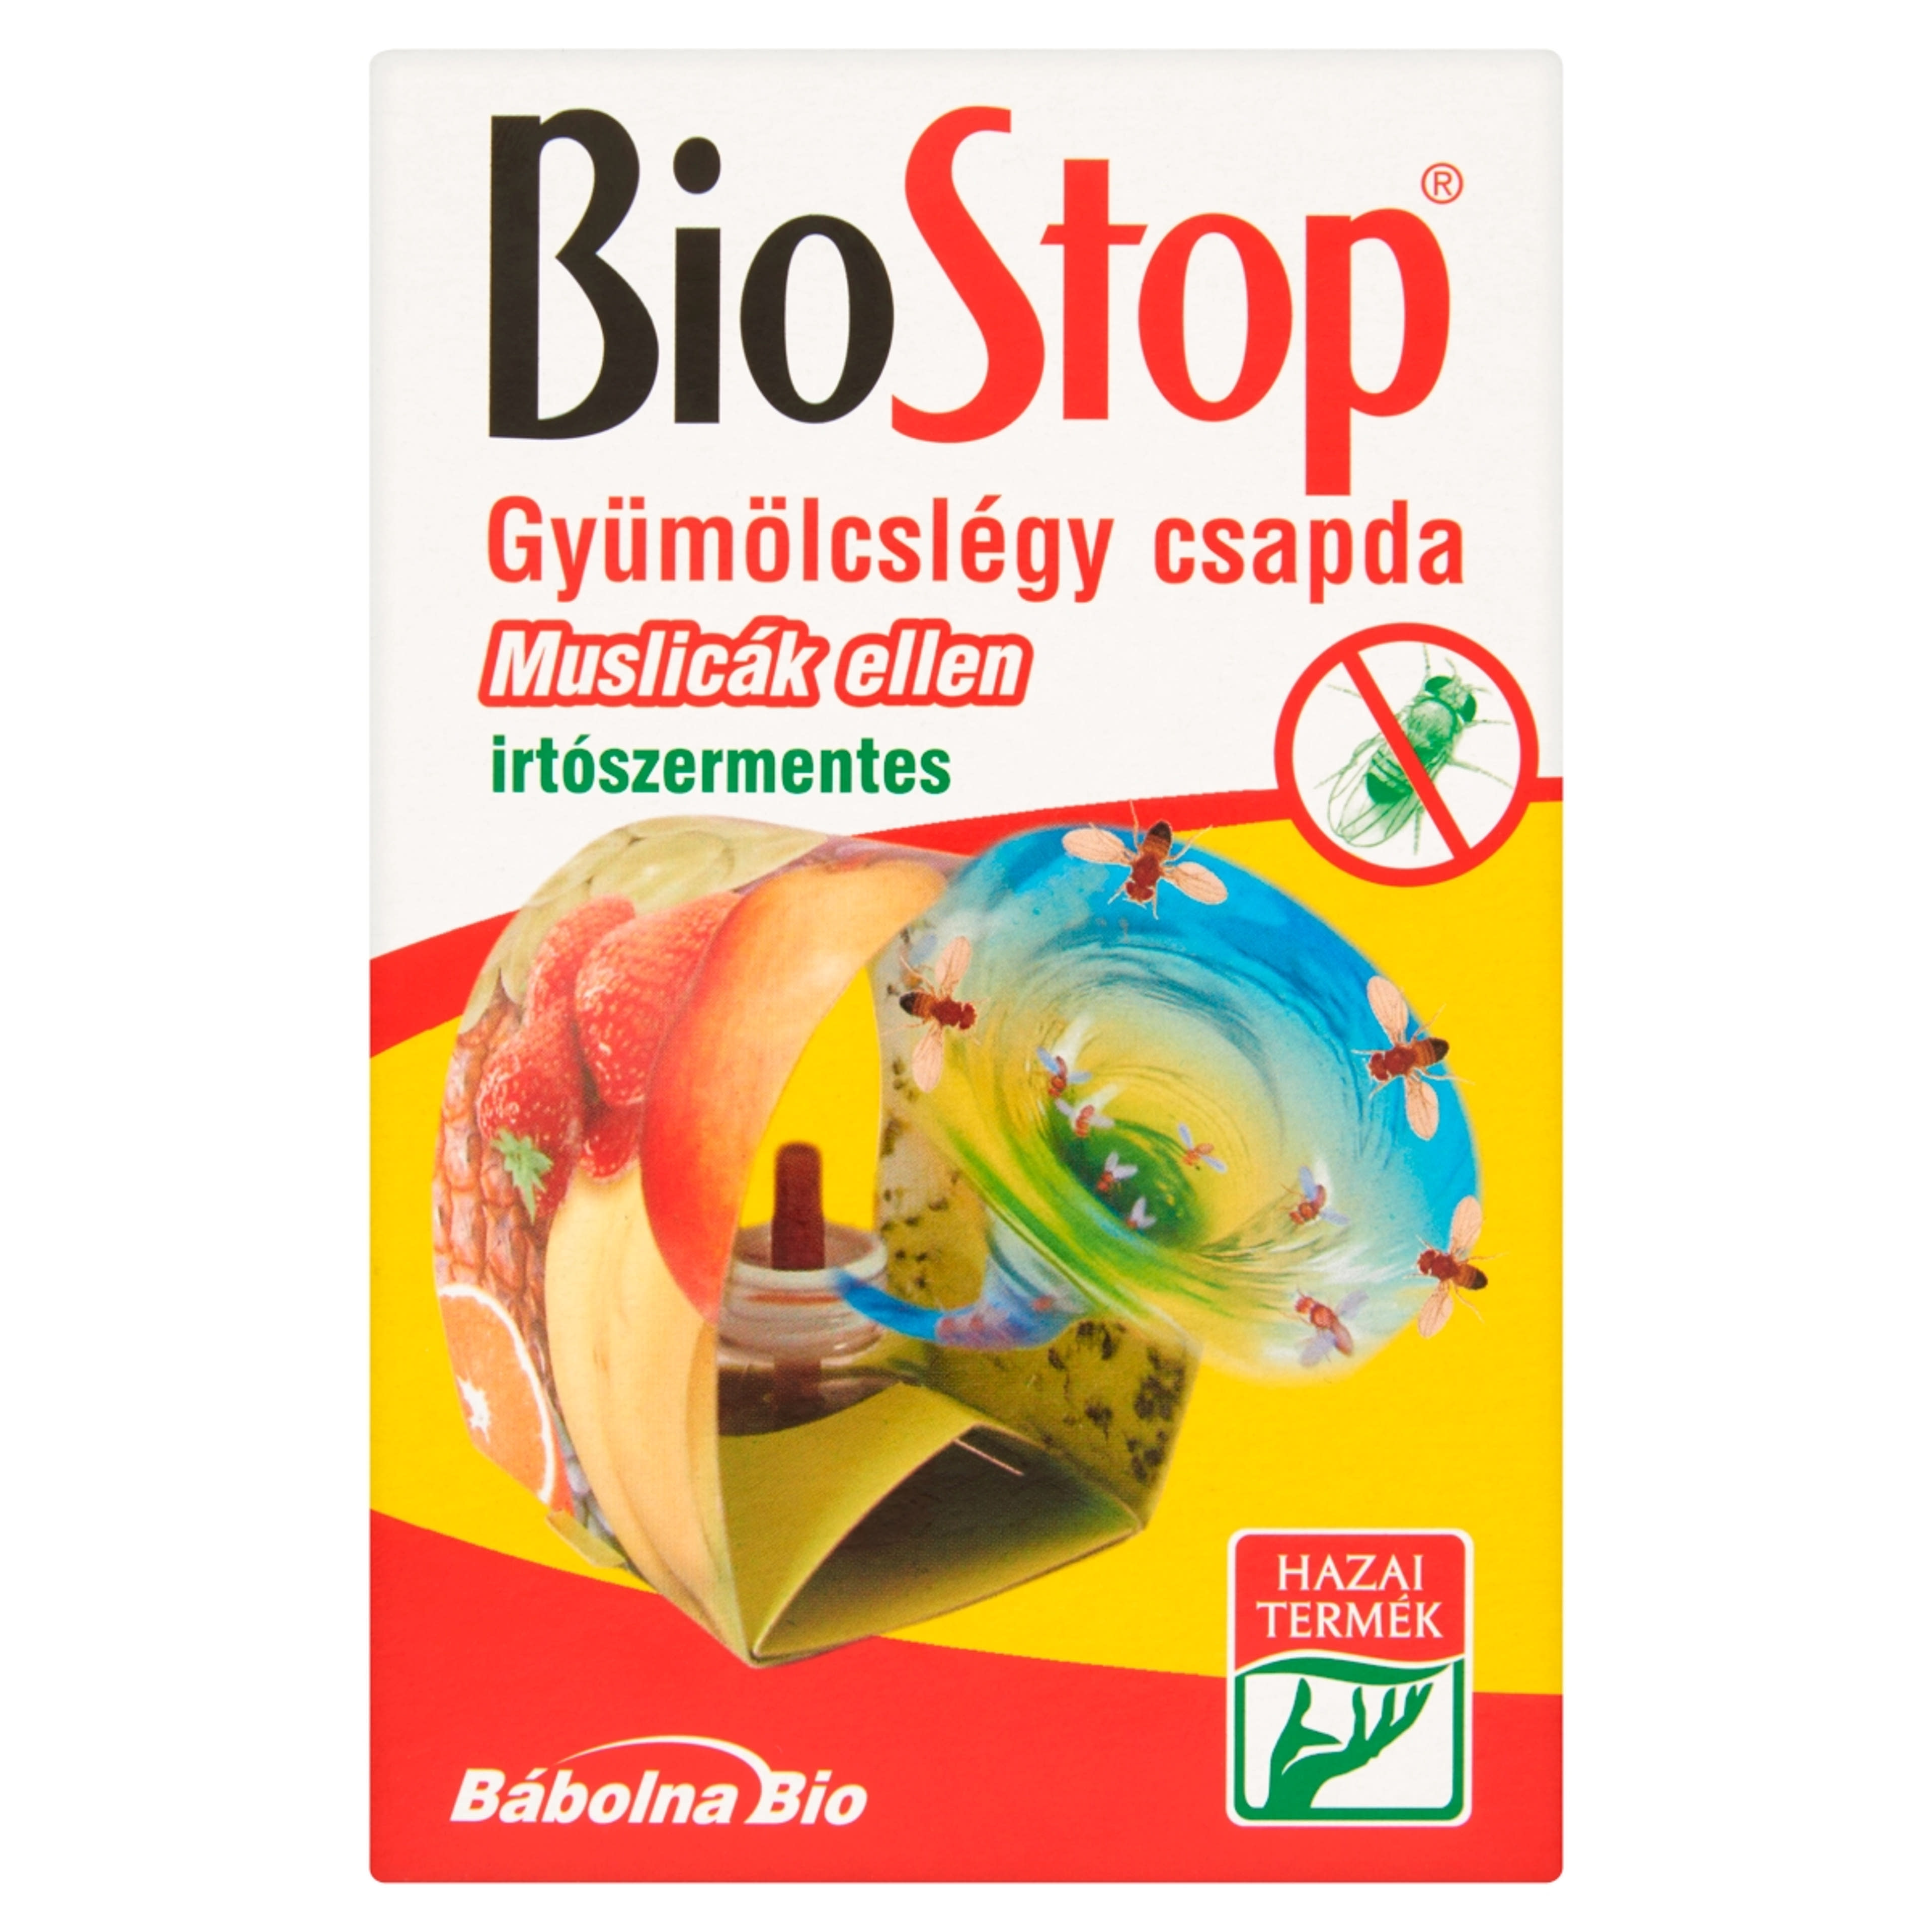 Biostop Gyümölcslégy Csapda - 1 db-1